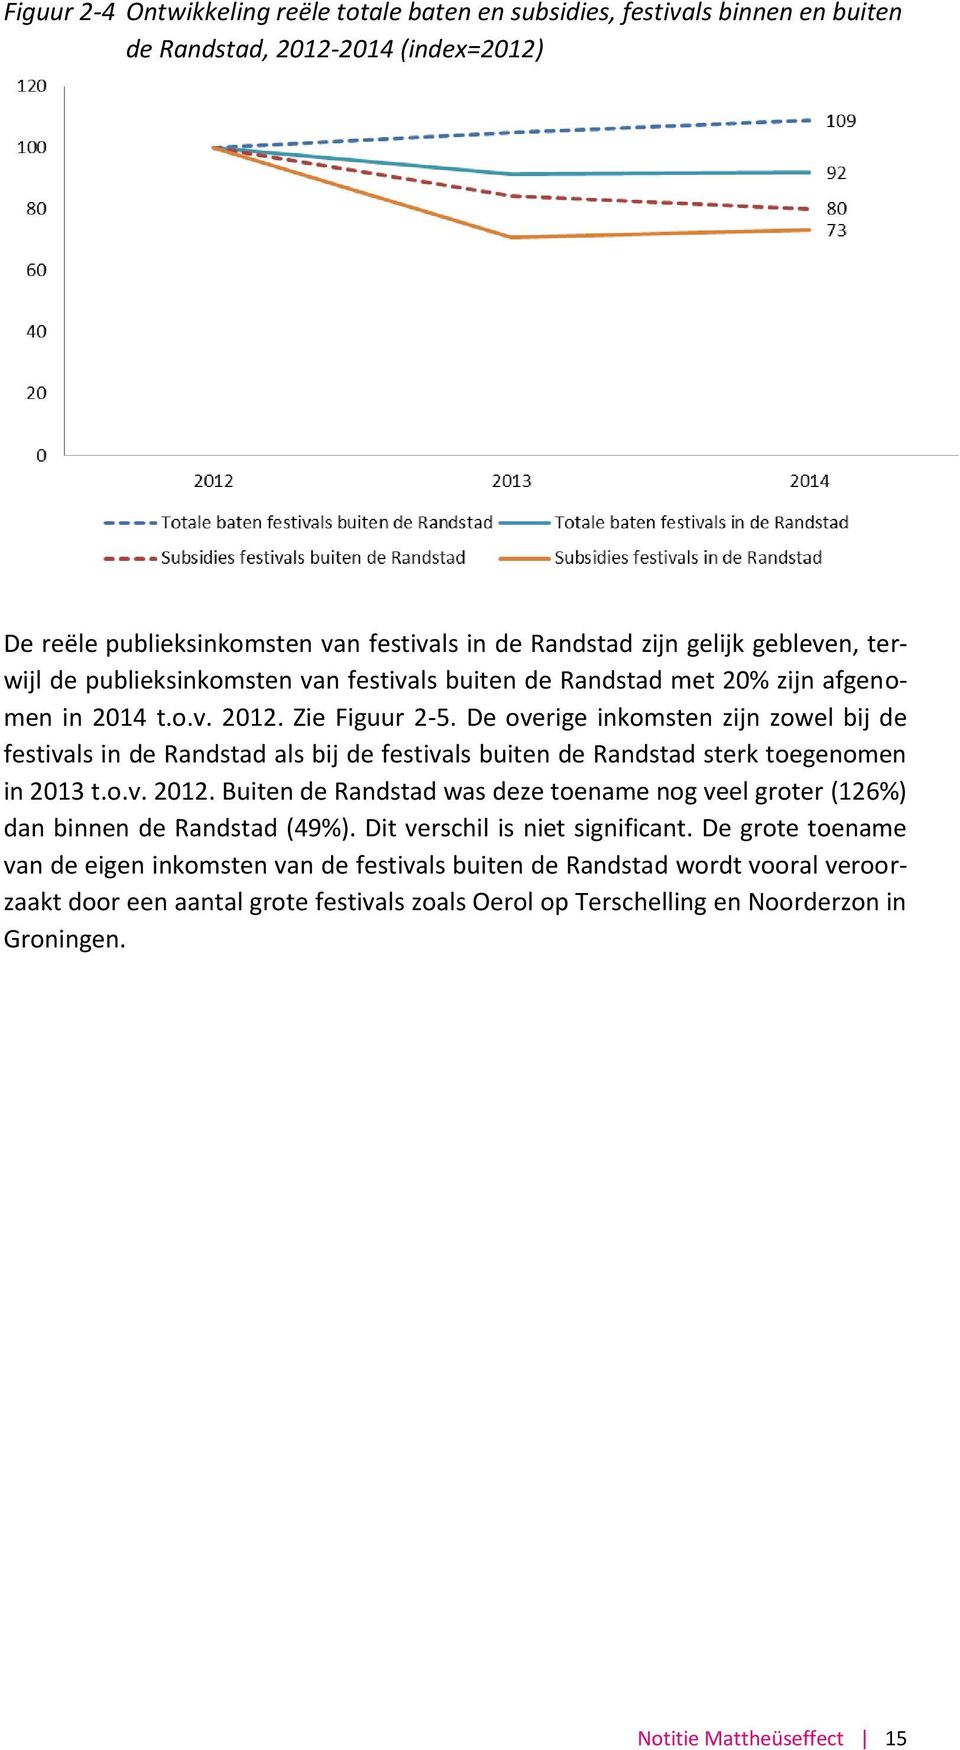 De overige inkomsten zijn zowel bij de festivals in de Randstad als bij de festivals buiten de Randstad sterk toegenomen in 2013 t.o.v. 2012.